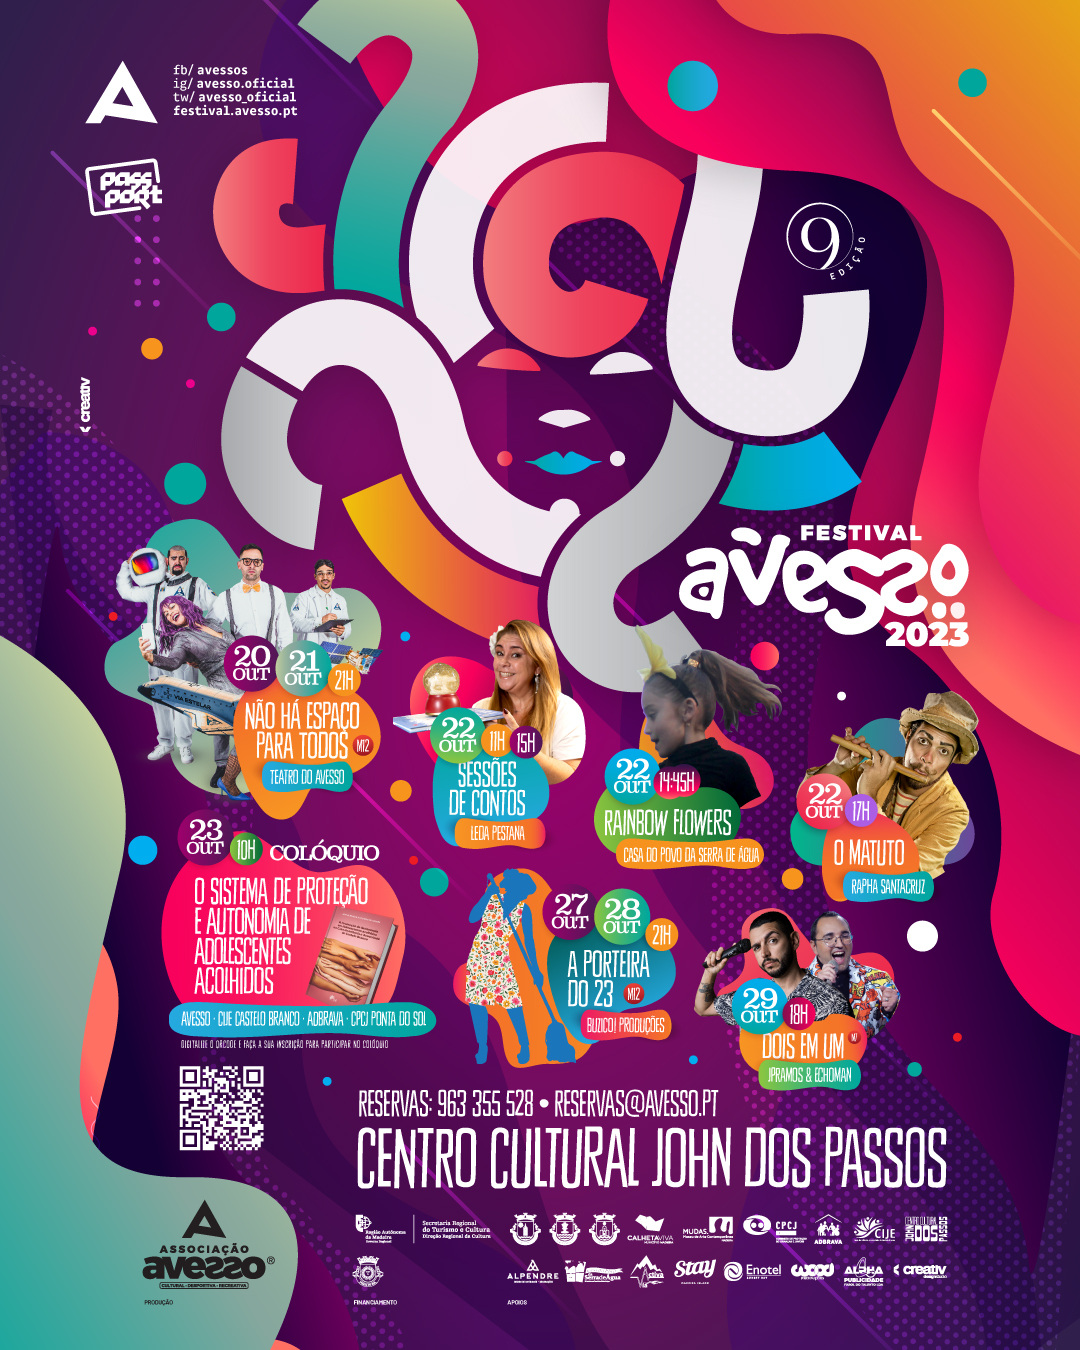 Avesso2023 FestivalAvesso